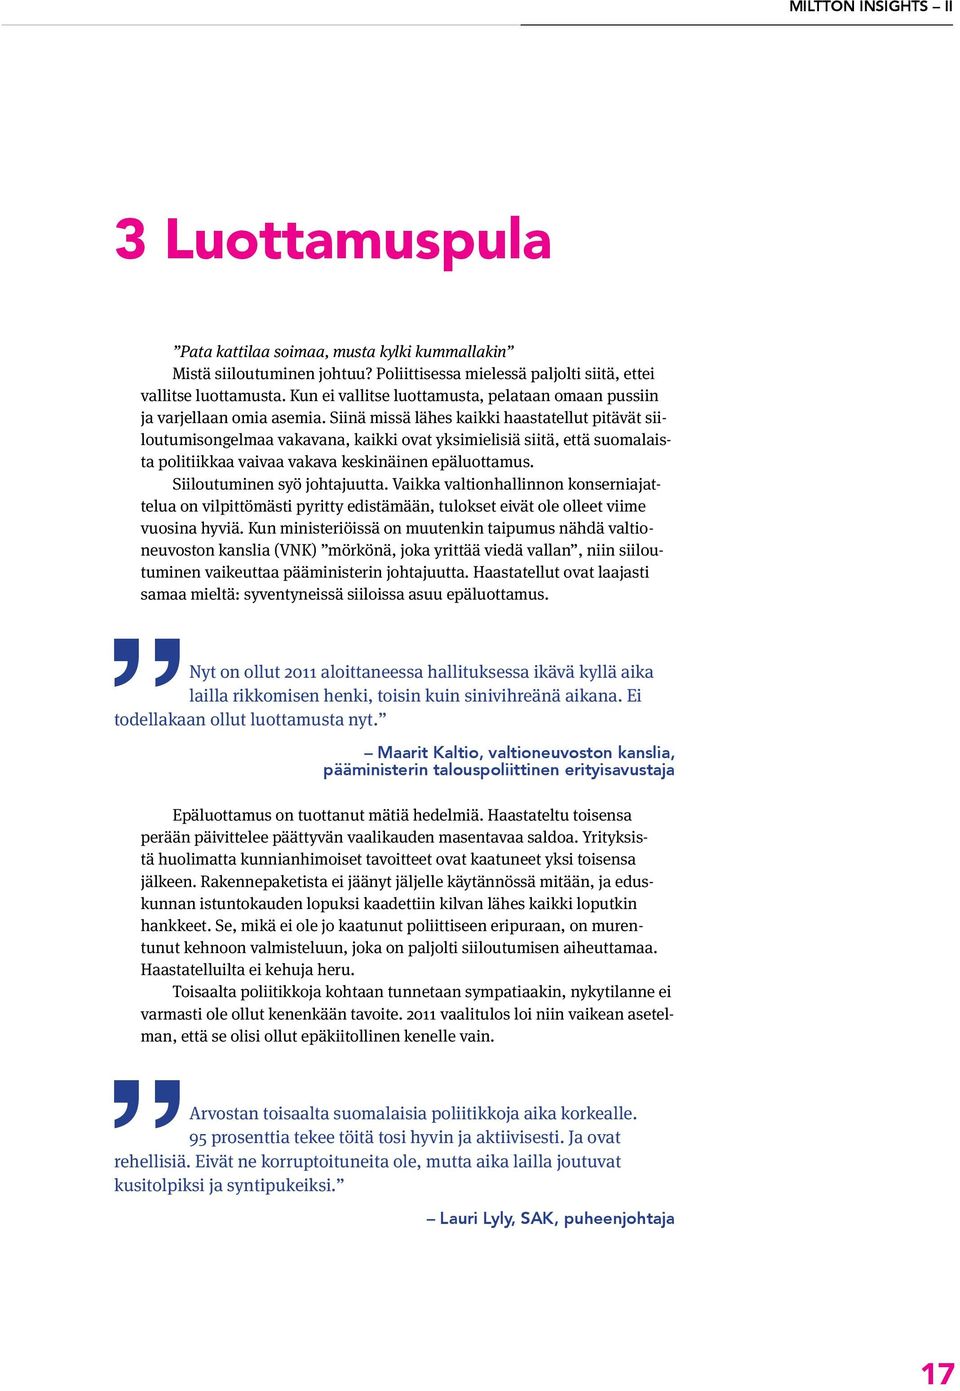 Siinä missä lähes kaikki haastatellut pitävät siiloutumisongelmaa vakavana, kaikki ovat yksimielisiä siitä, että suomalaista politiikkaa vaivaa vakava keskinäinen epäluottamus.